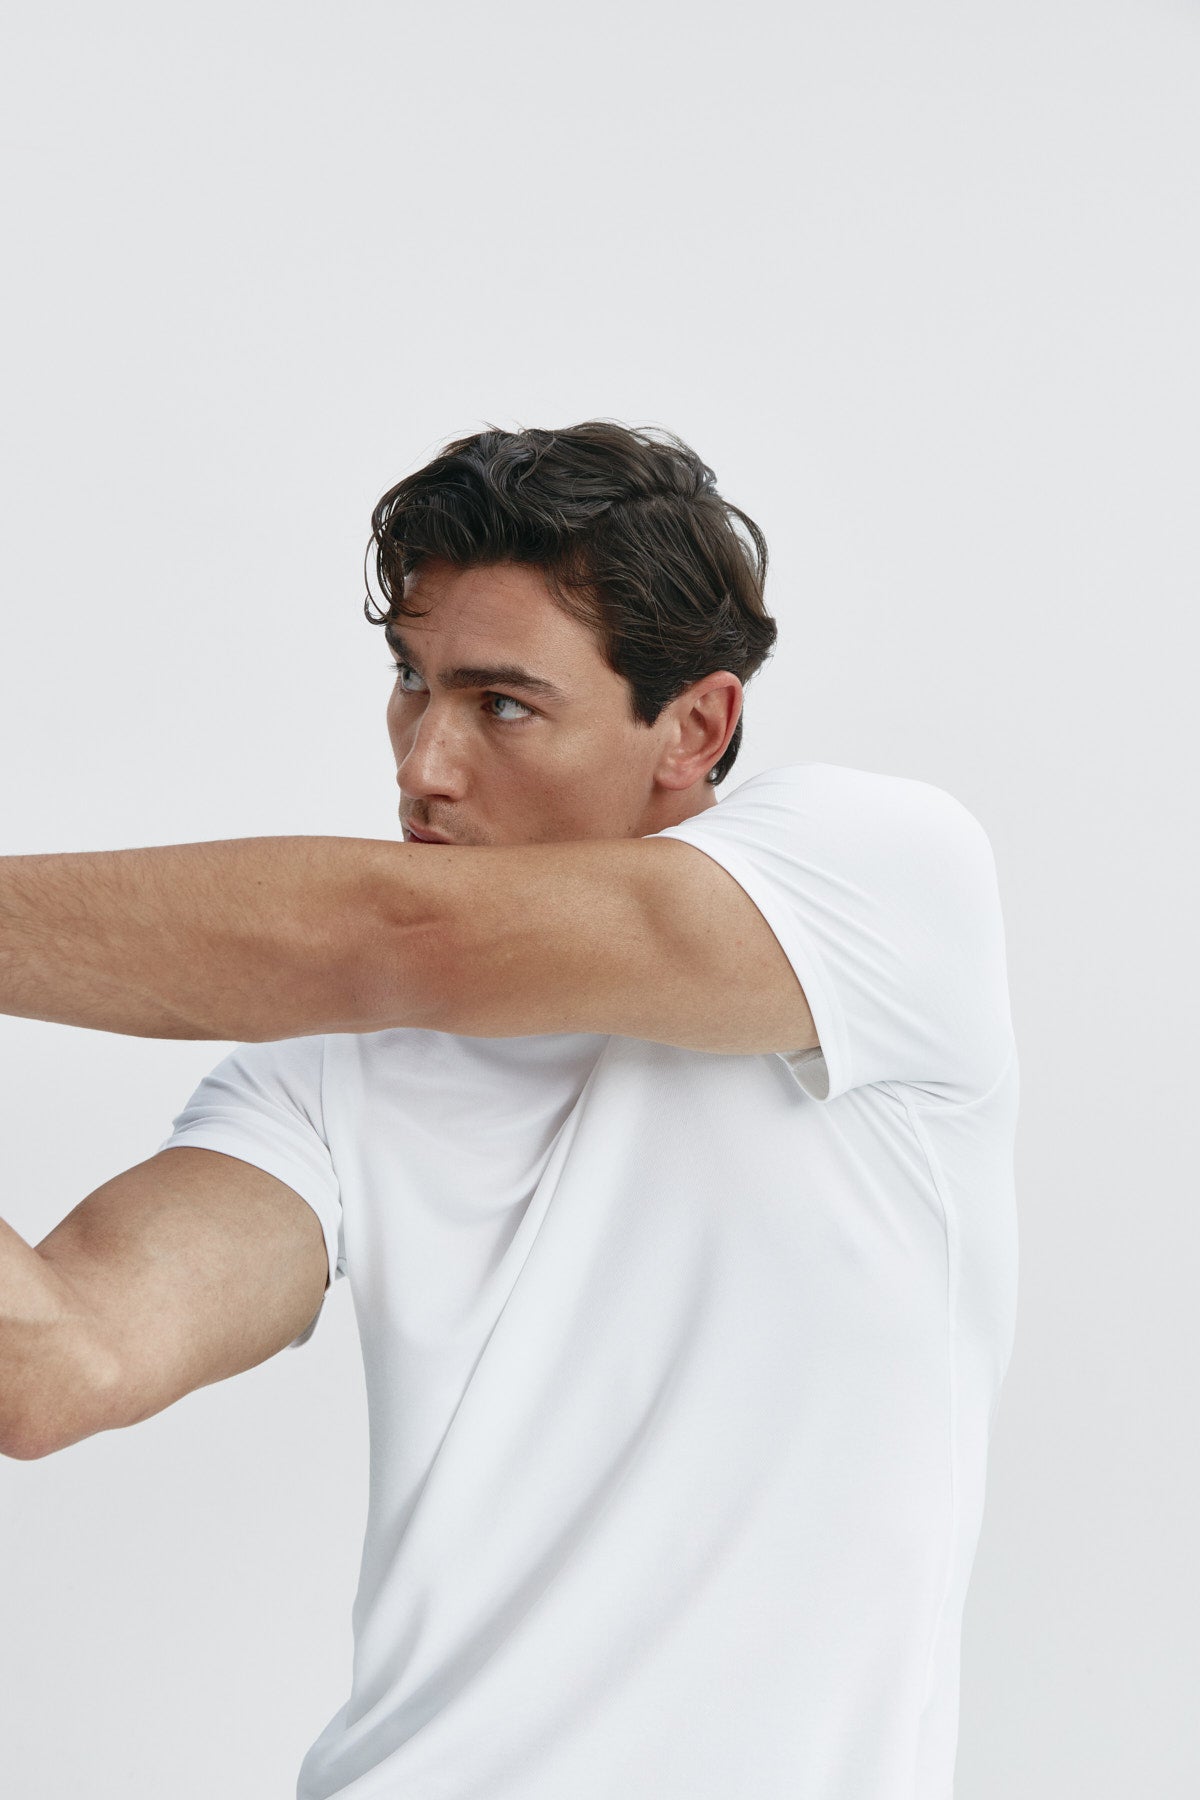 Camiseta de hombre estampada de rayas marino: Camiseta de hombre de rayas marino de manga corta, antiarrugas y antimanchas. Foto flexibilidad.